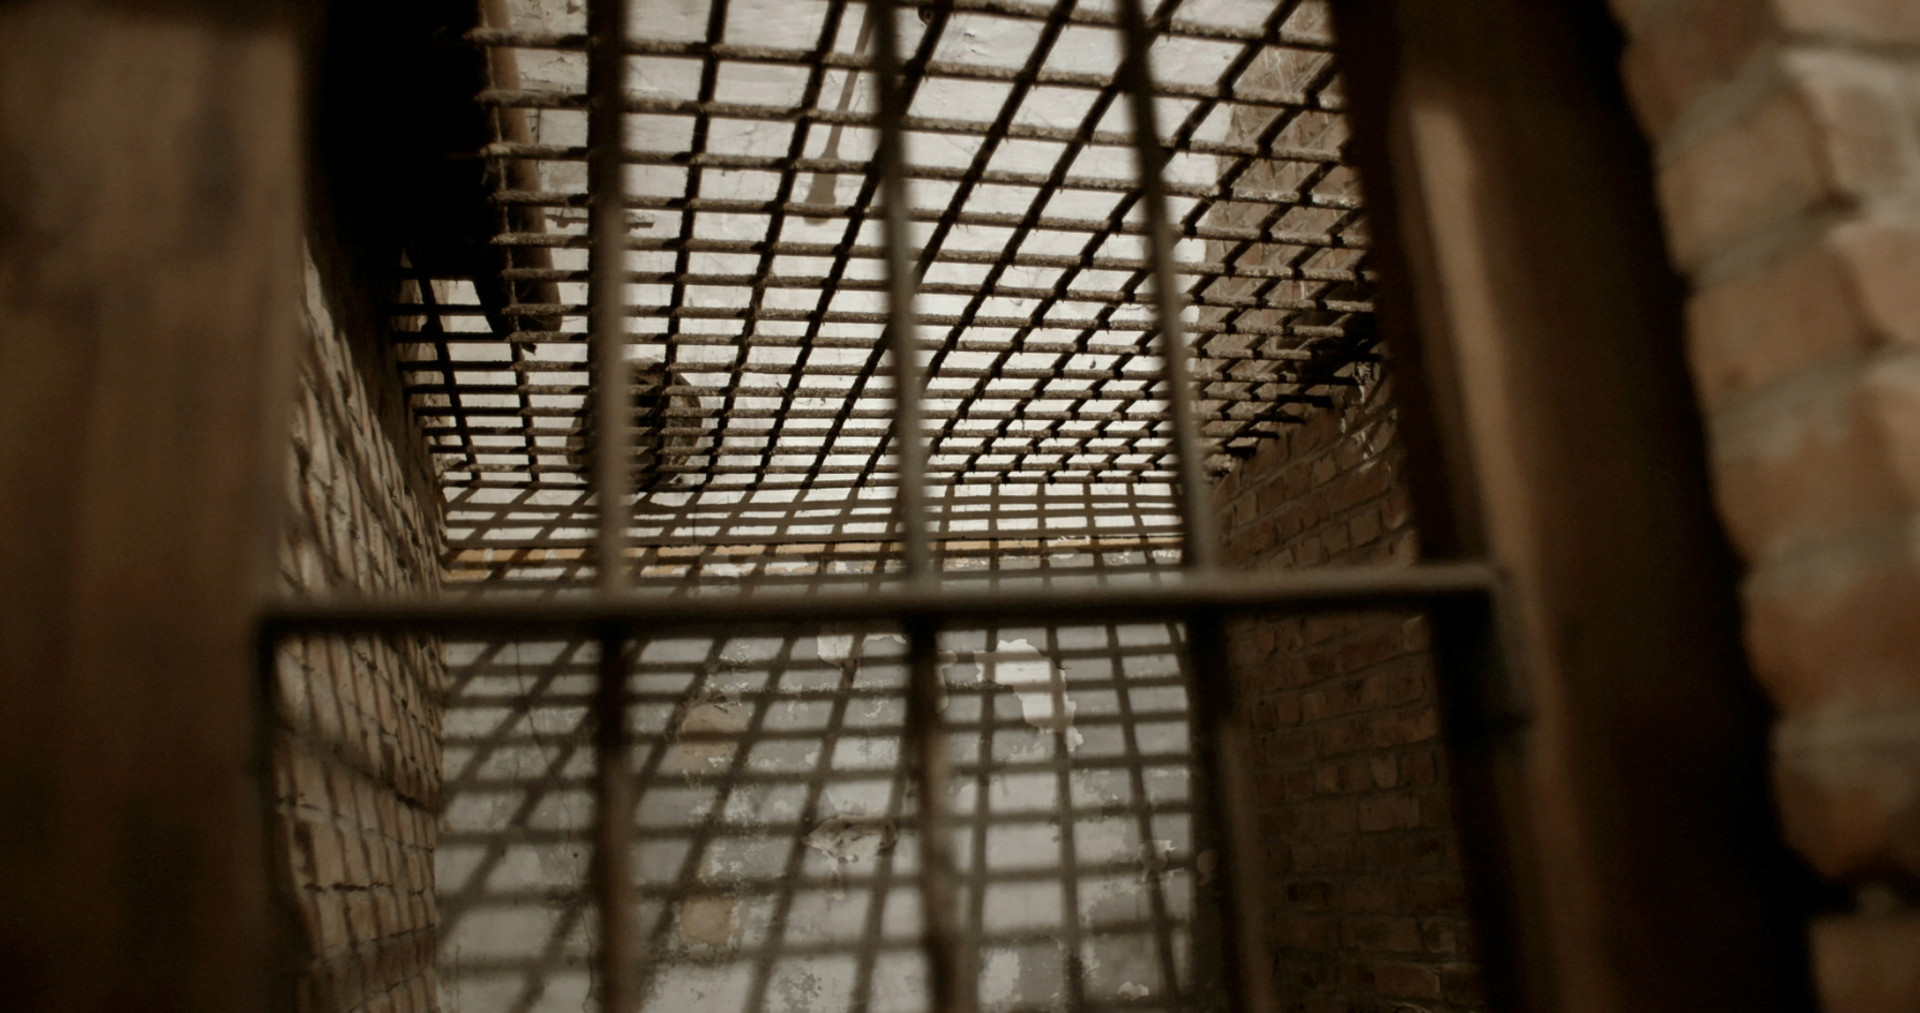 Einblick in eine Zelle in der ehemaligen Festung Breendonk in Belgien. Copyright: ZDF/Dieter Reifarth